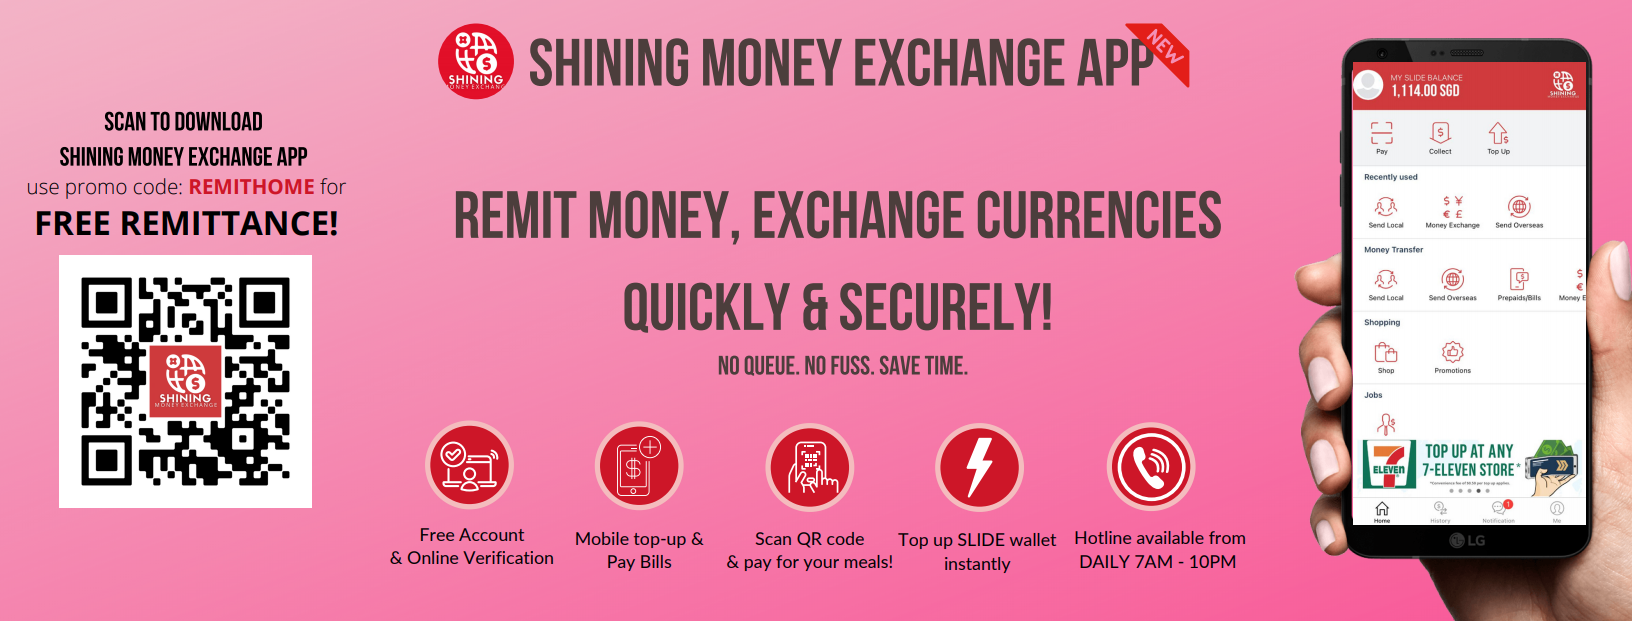 web banner of shining money exchange